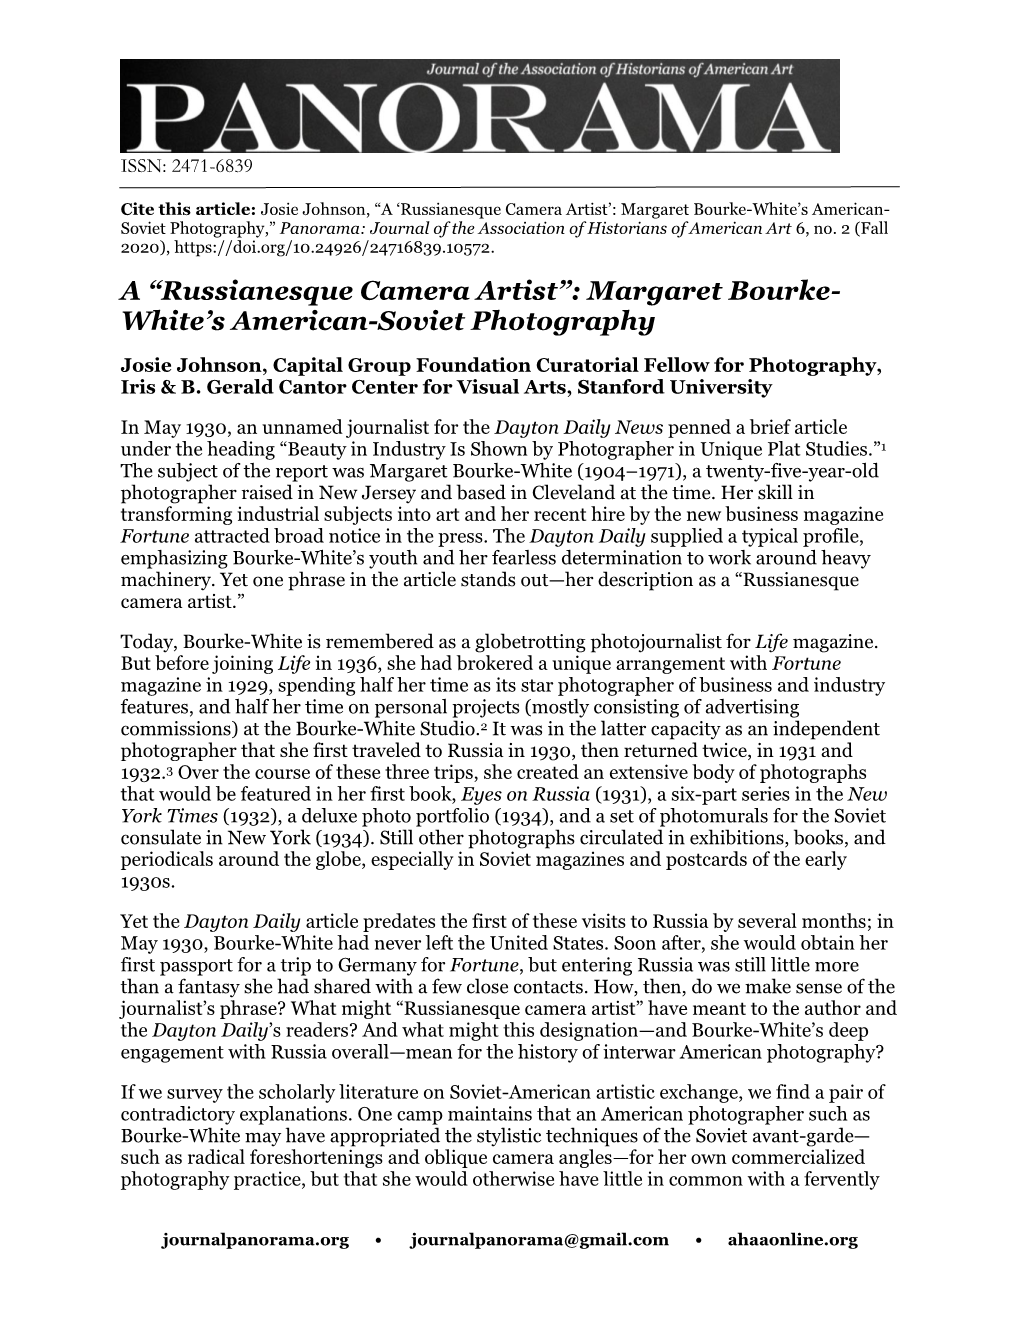 A “Russianesque Camera Artist”: Margaret Bourke- White's American